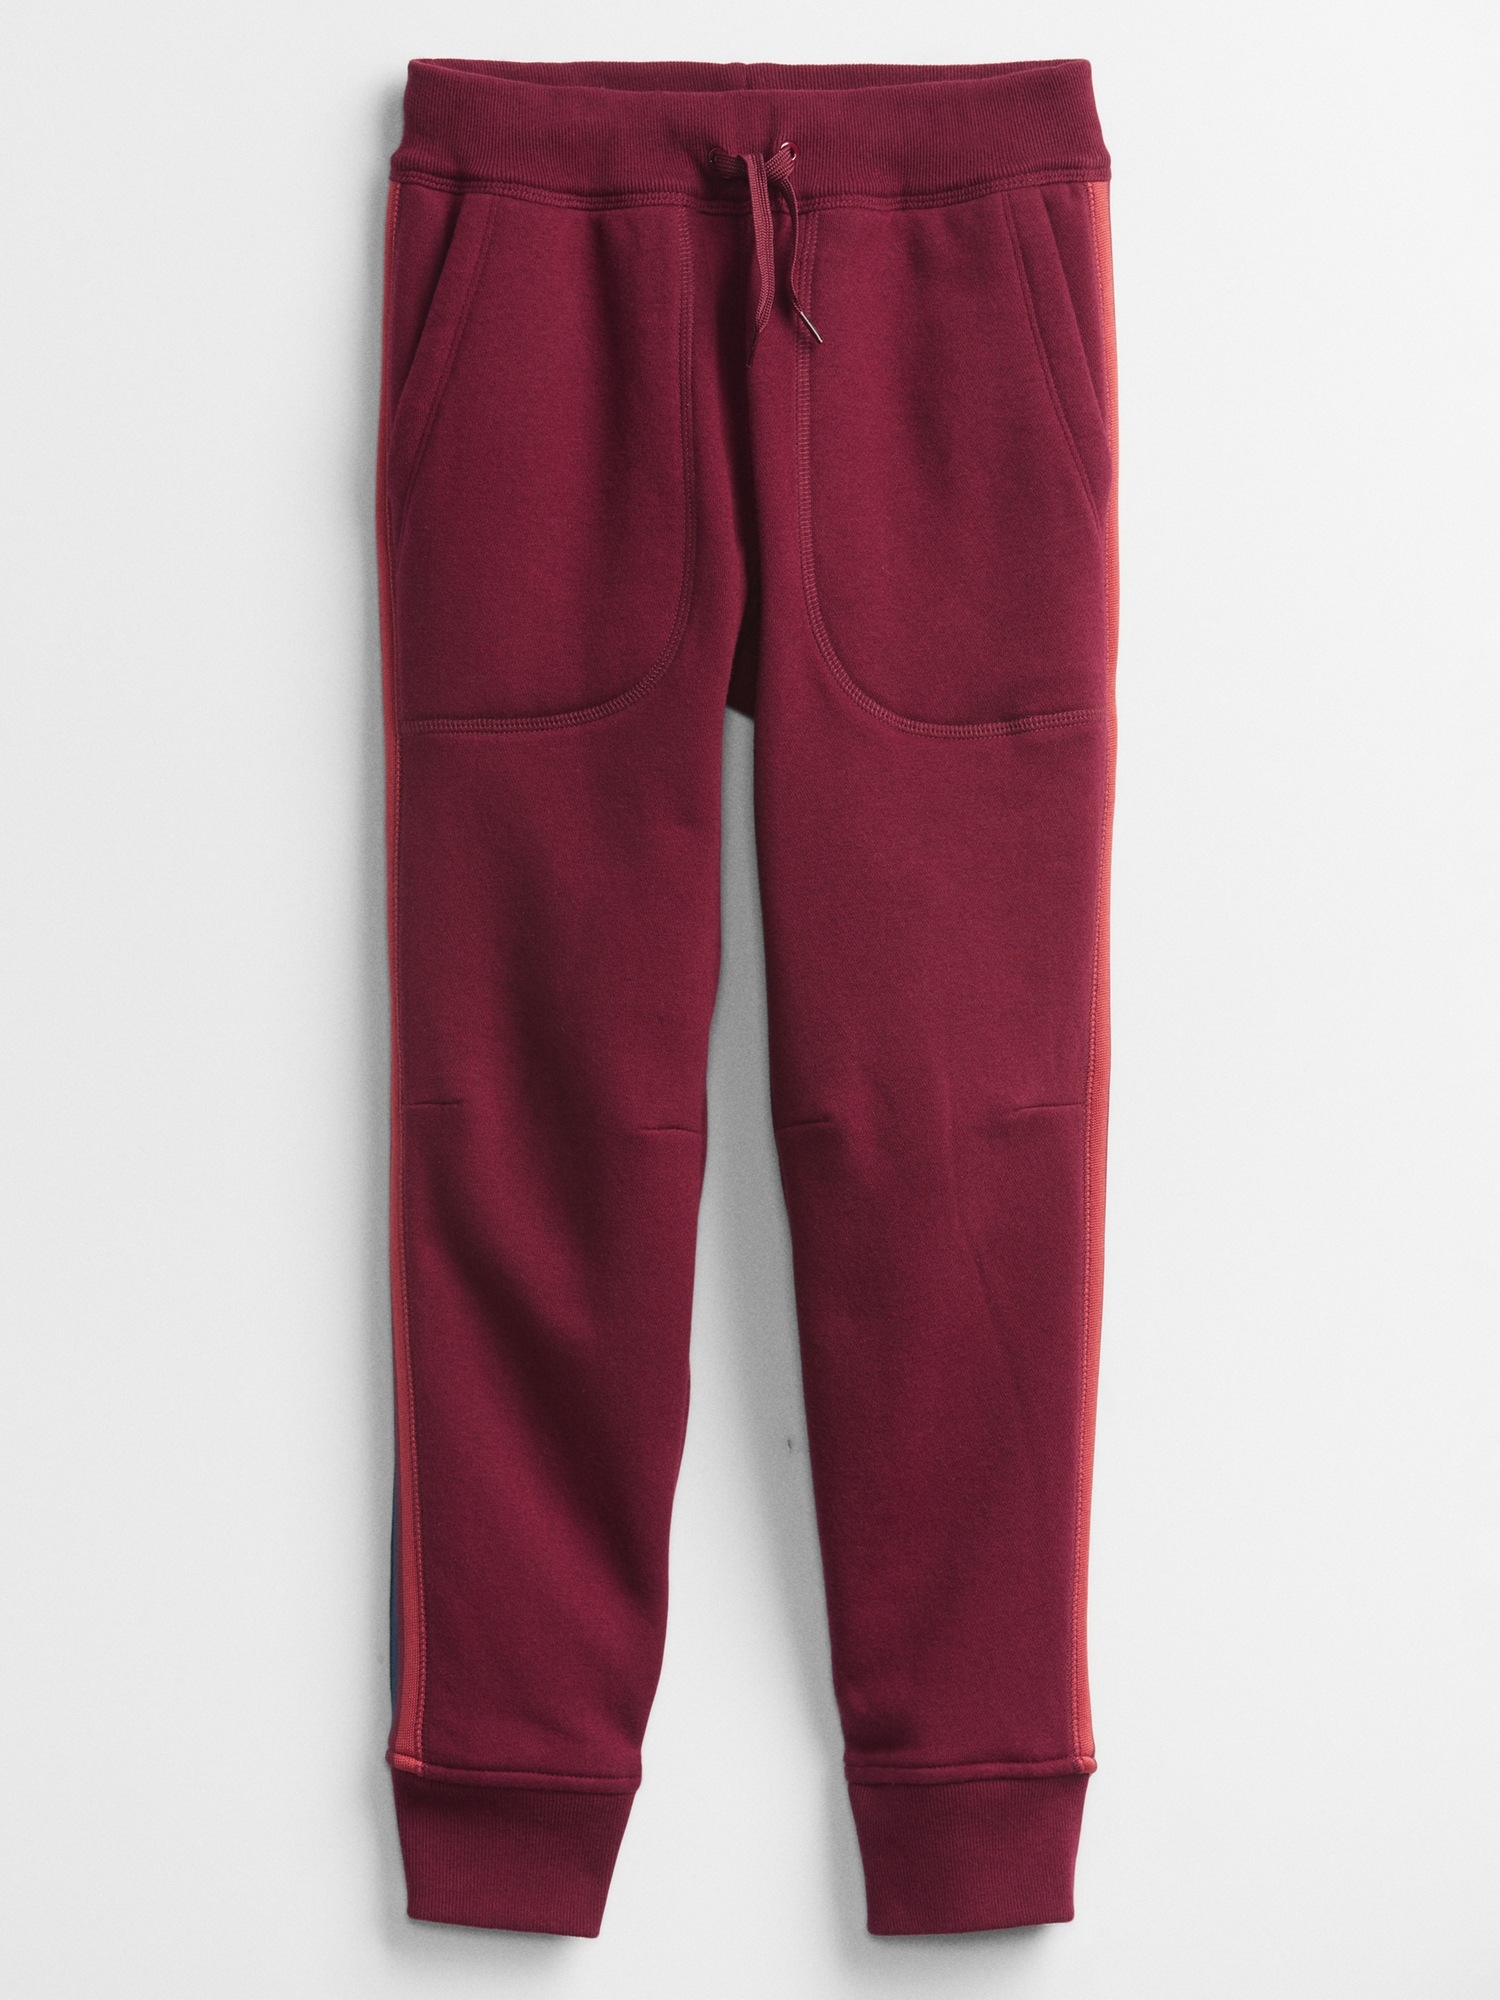 Kids Side-Stripe Pull-On Pants | Gap Factory